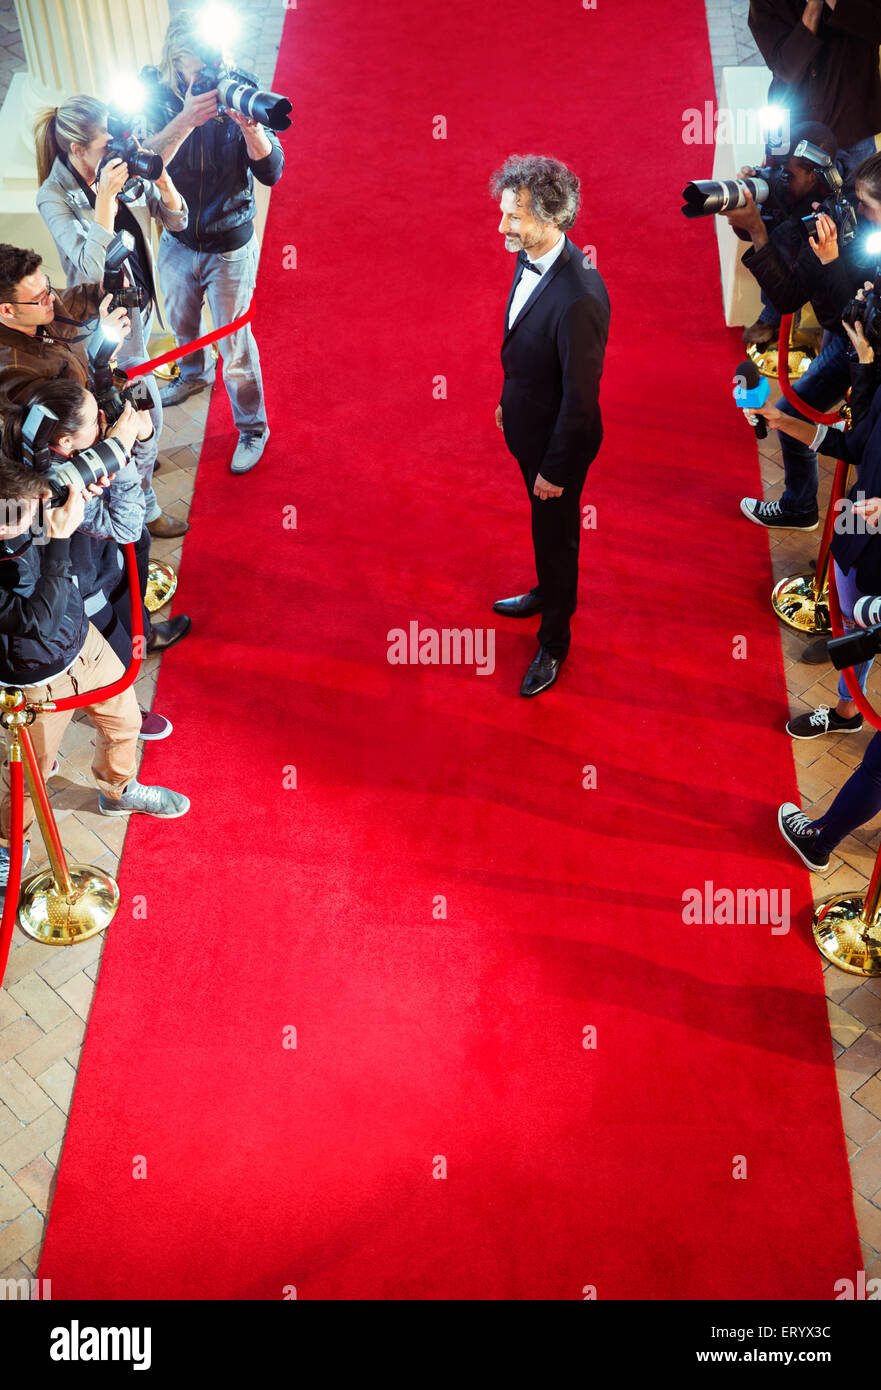 Celebrity photographiée par des paparazzi at Red Carpet event Banque D'Images